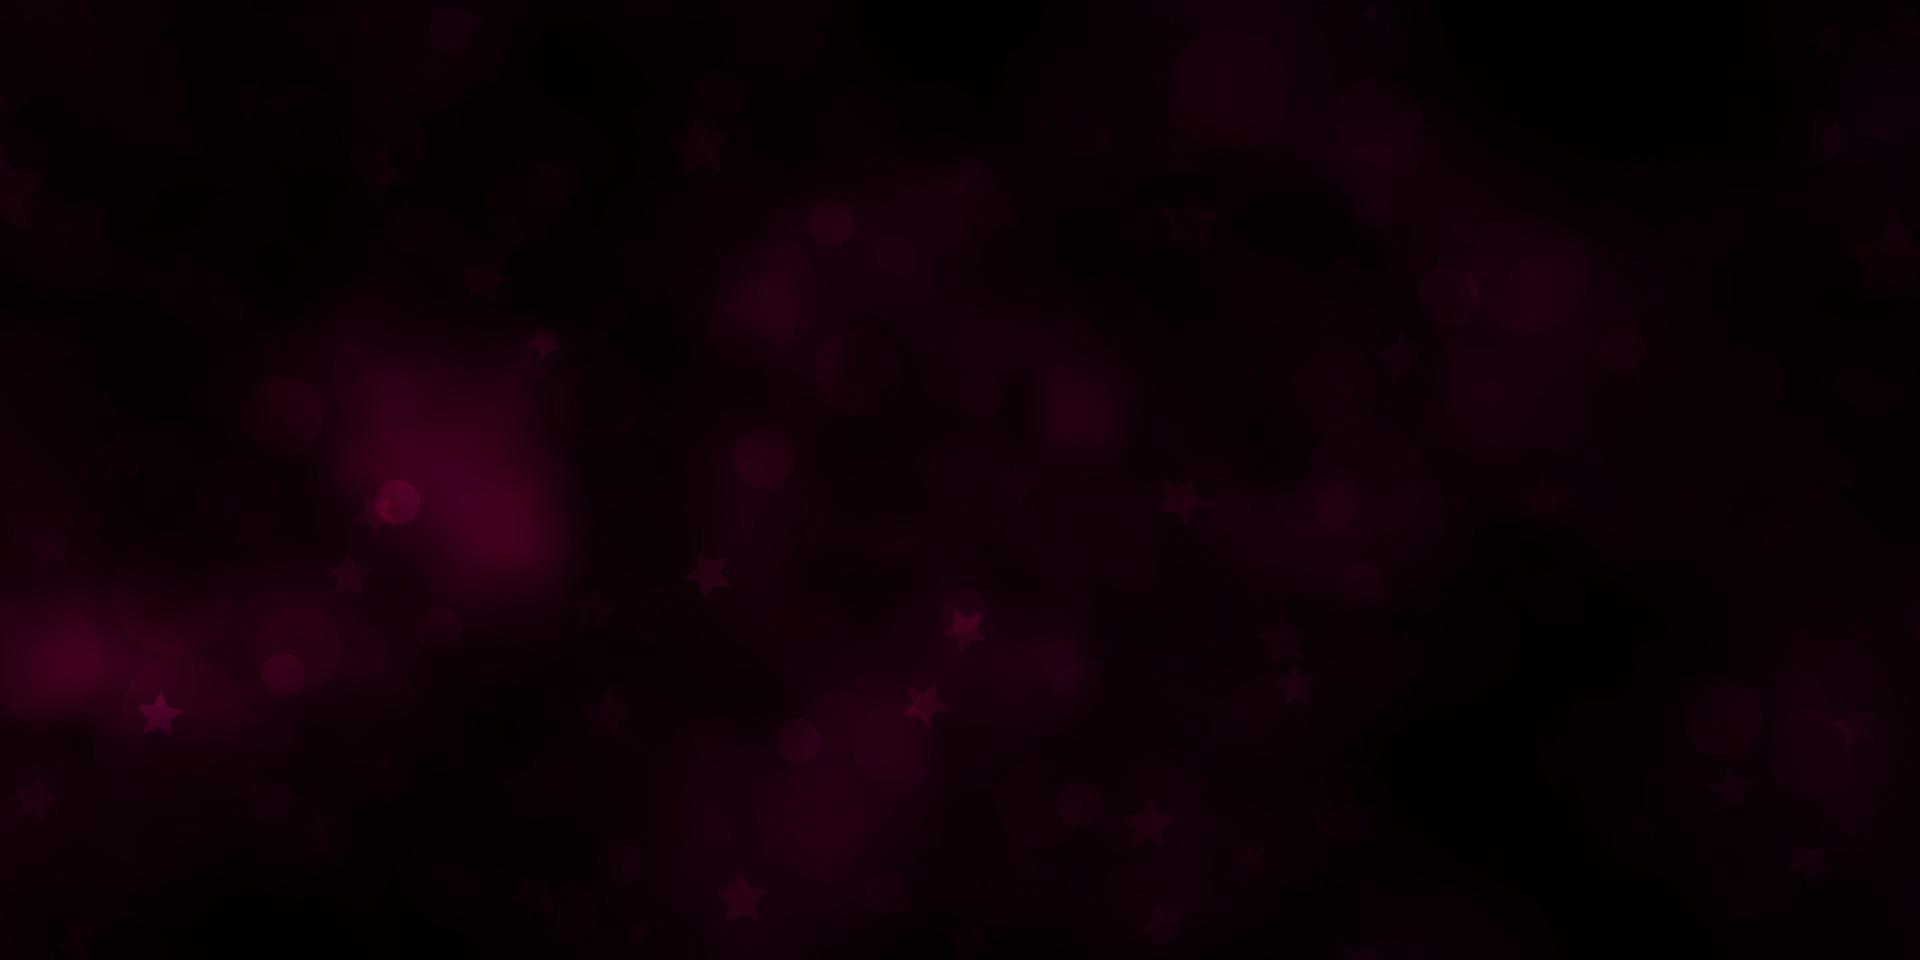 sfondo vettoriale rosa scuro, blu con cerchi, stelle.